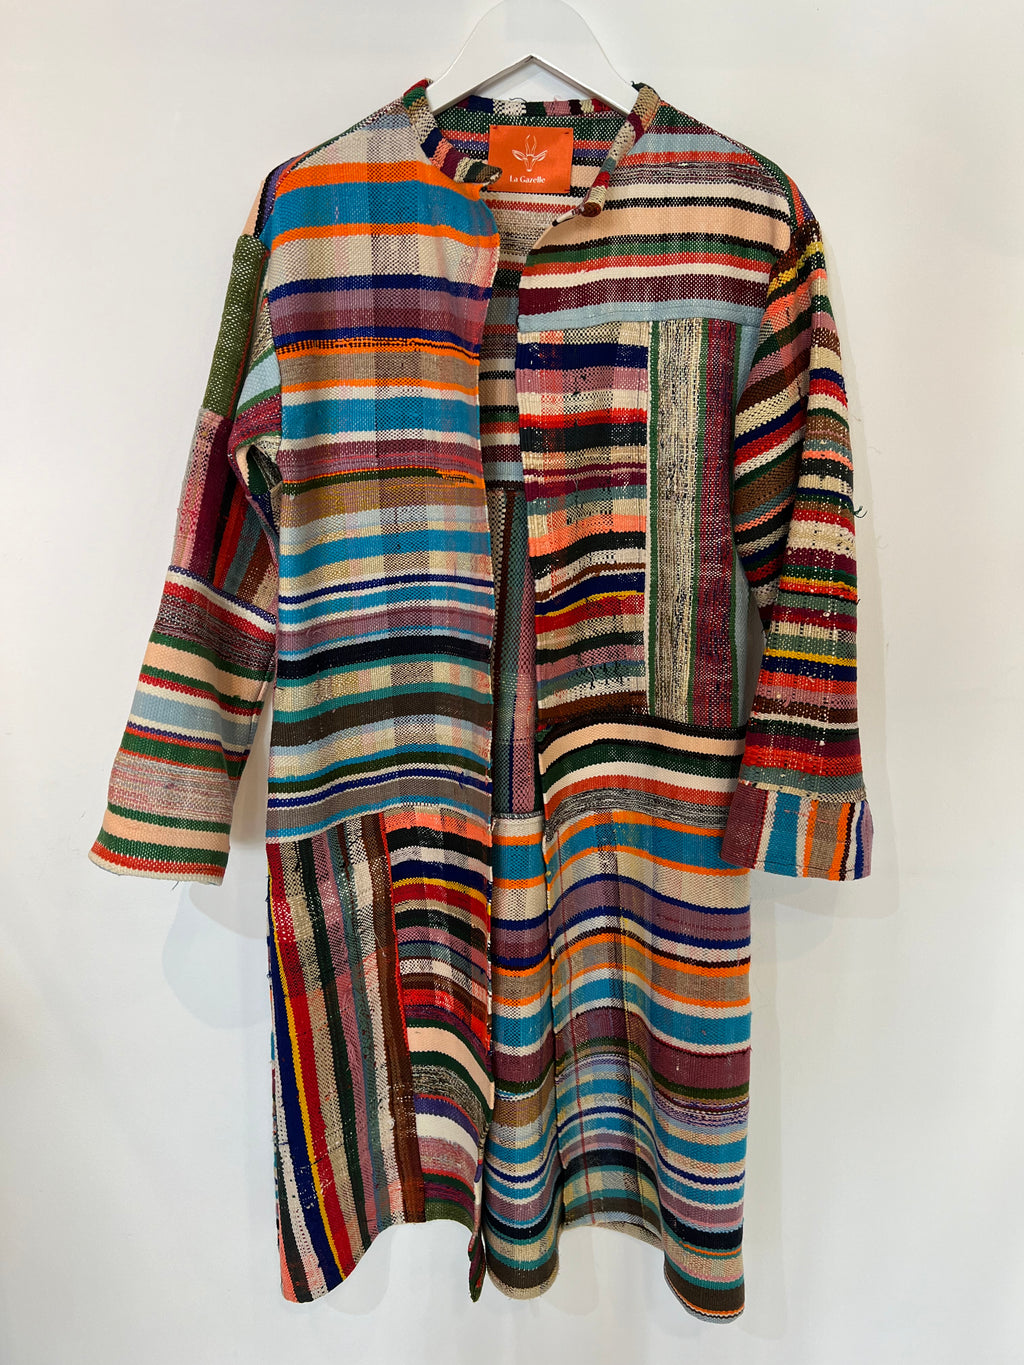 Hetre Alresford Hampshire Clothes Store La Gazelle Orange Striped Vintage Long Coat